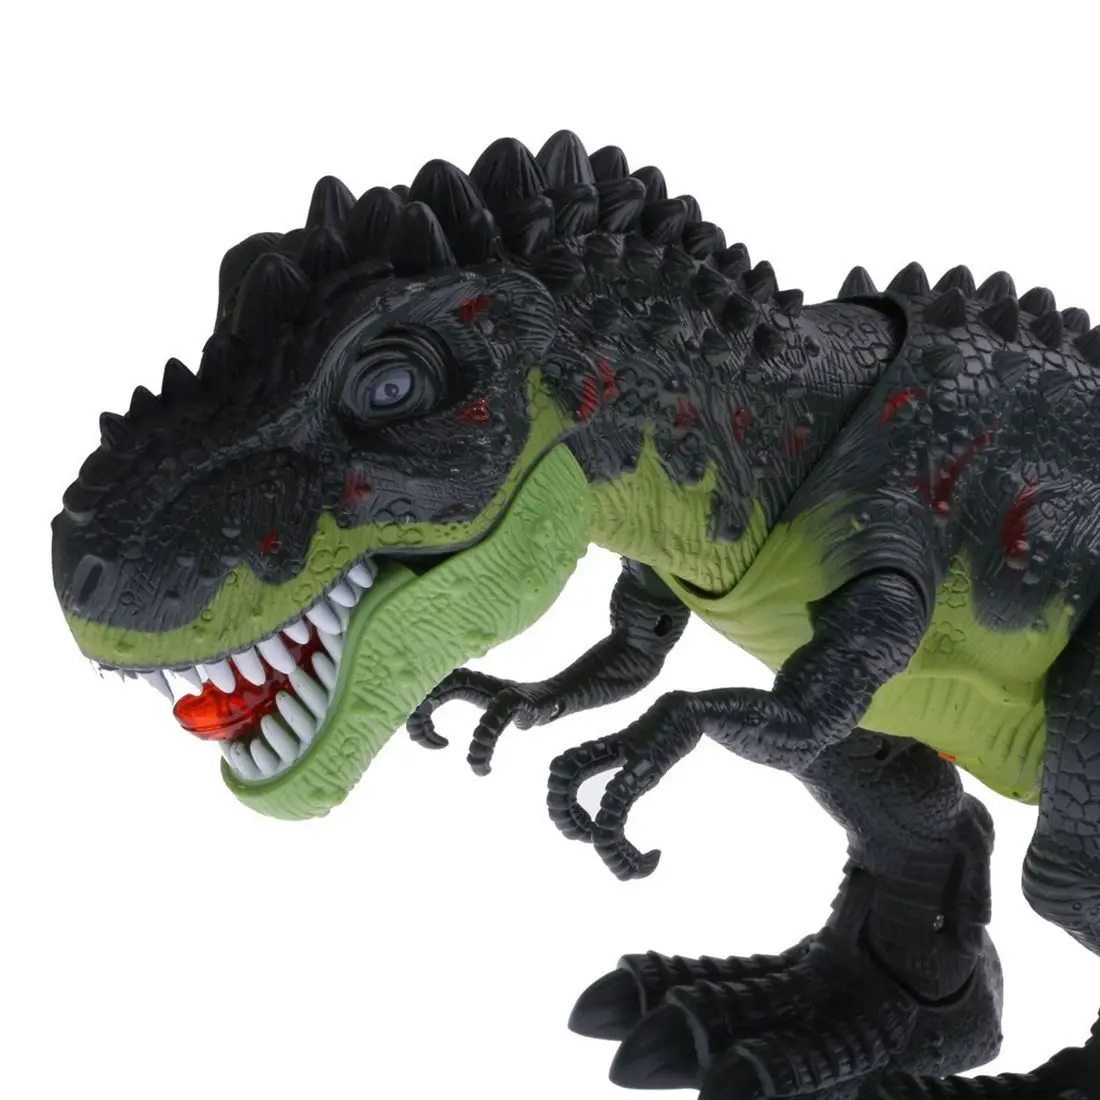 MYMF-Прохладный Электрический ходячий динозавр игрушка робот w/звук свет перемещение детей подарок #2